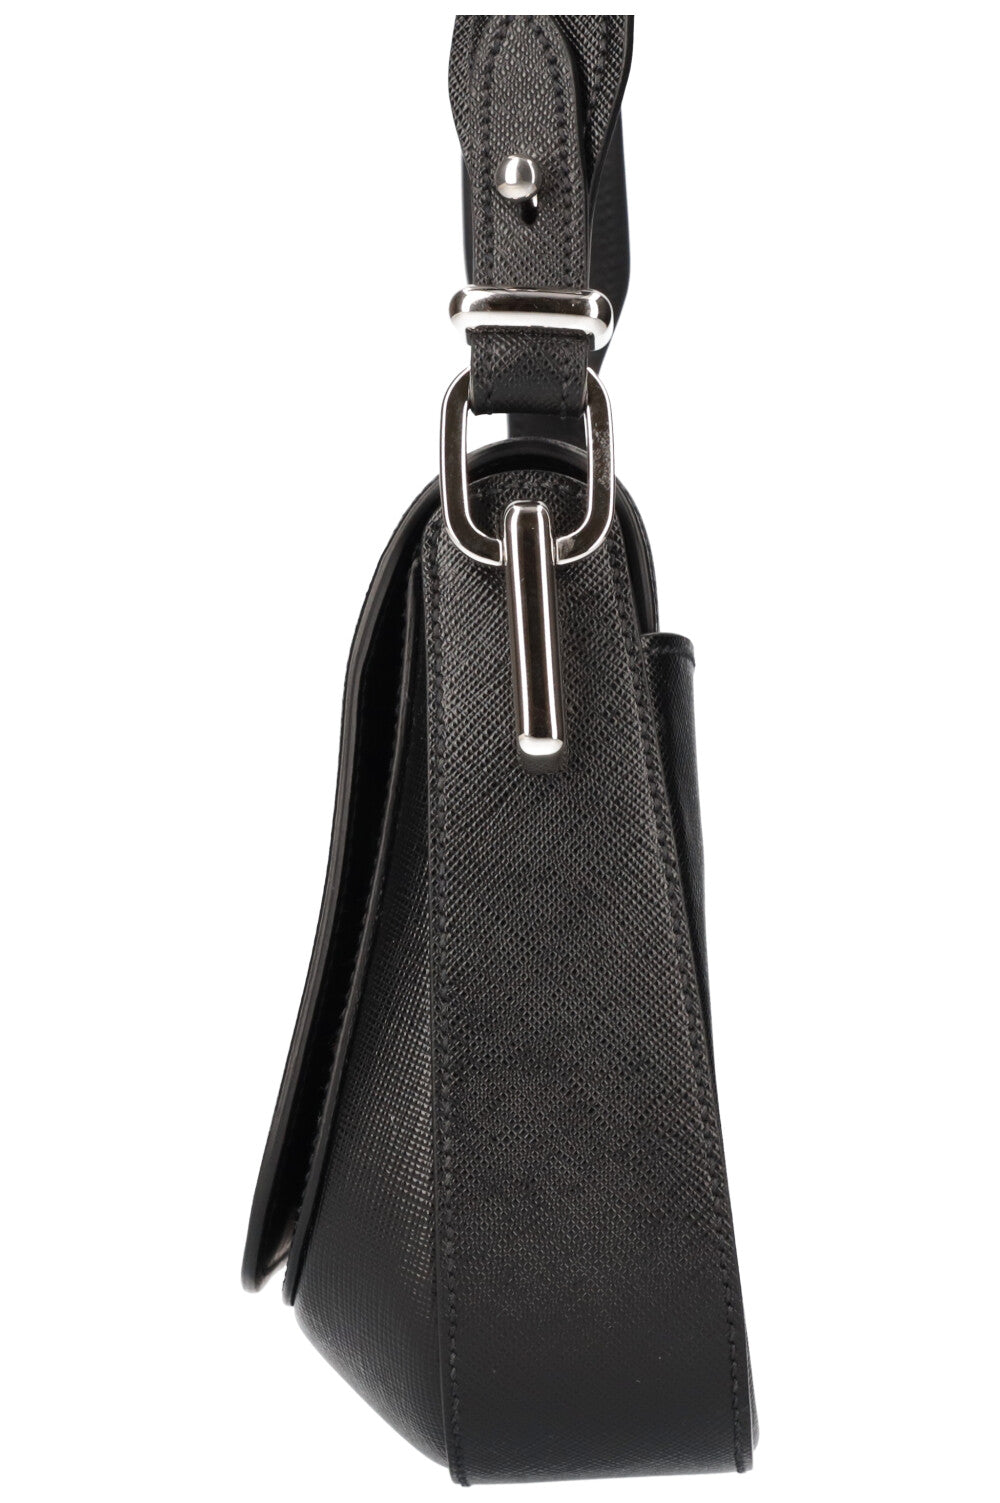 PRADA Shoulder Bag with Pouch Saffiano Black